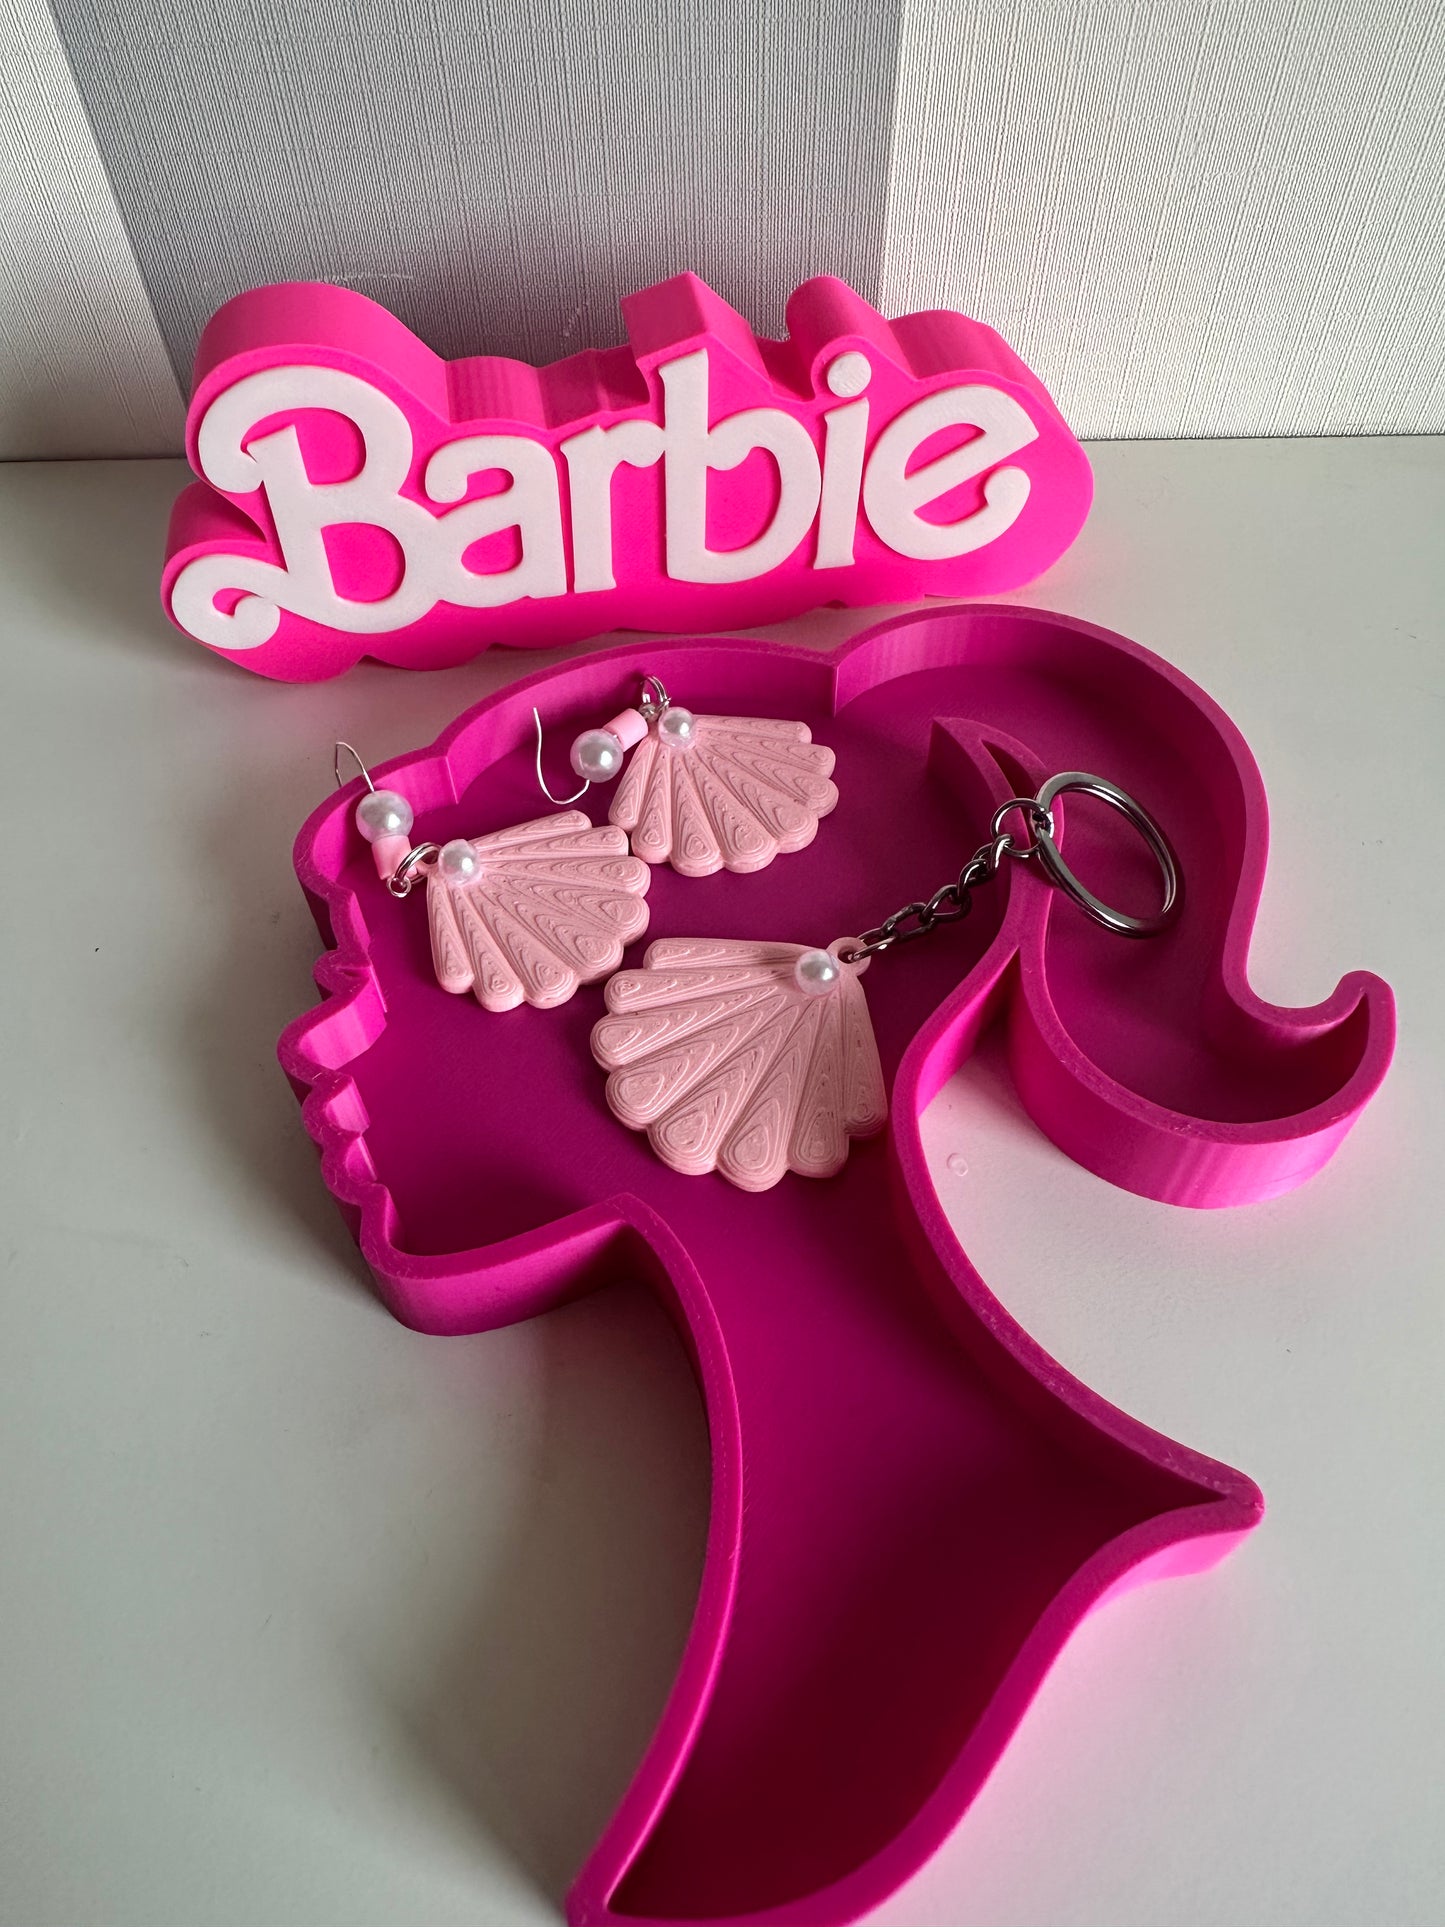 Barbie Tray